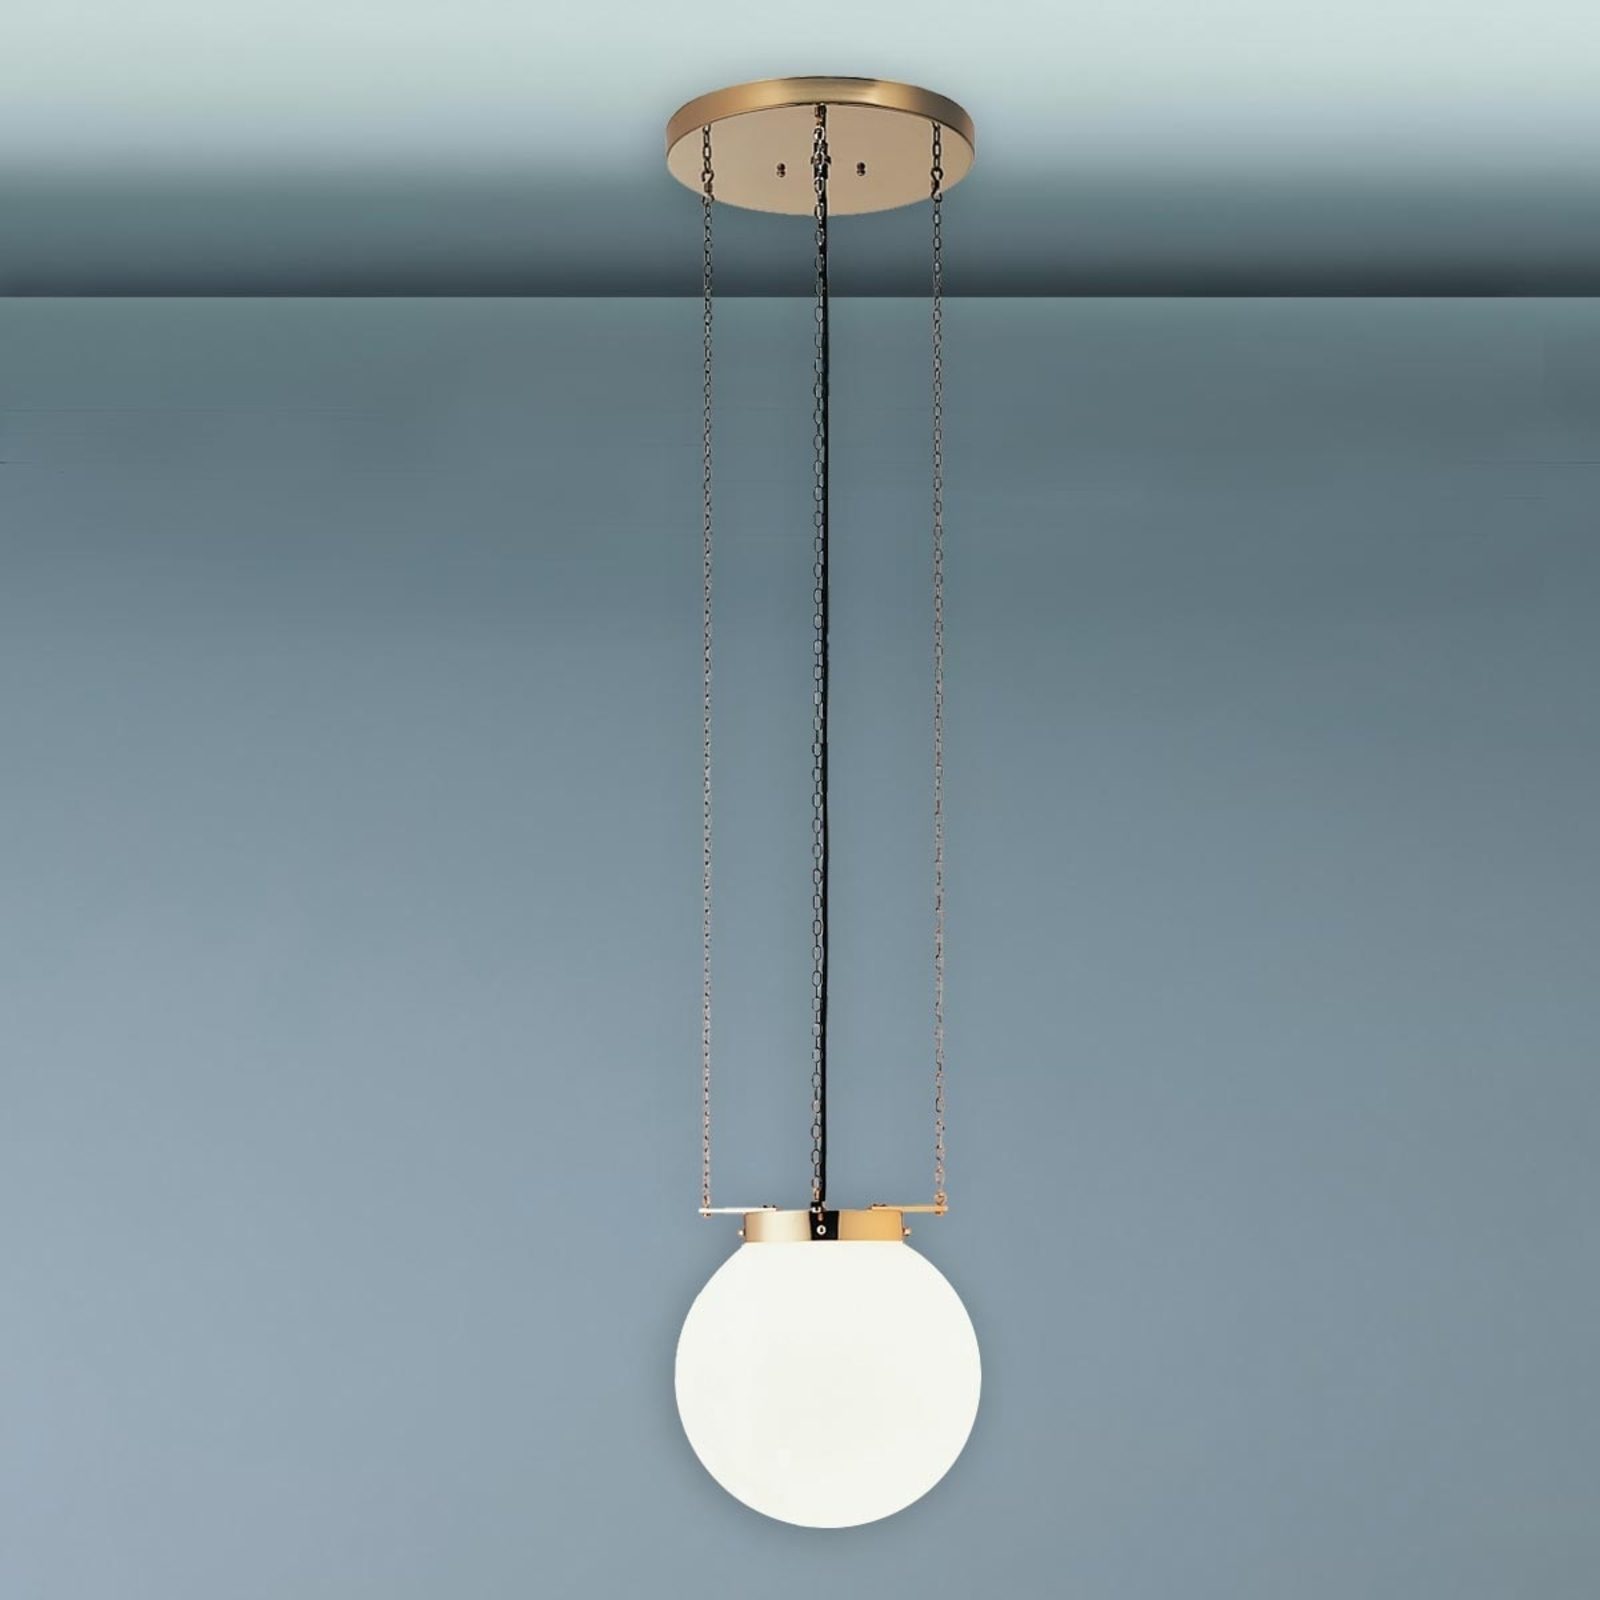 Hesje historisch orgaan Hanglamp in Bauhaus-stijl, nikkel | Lampen24.be